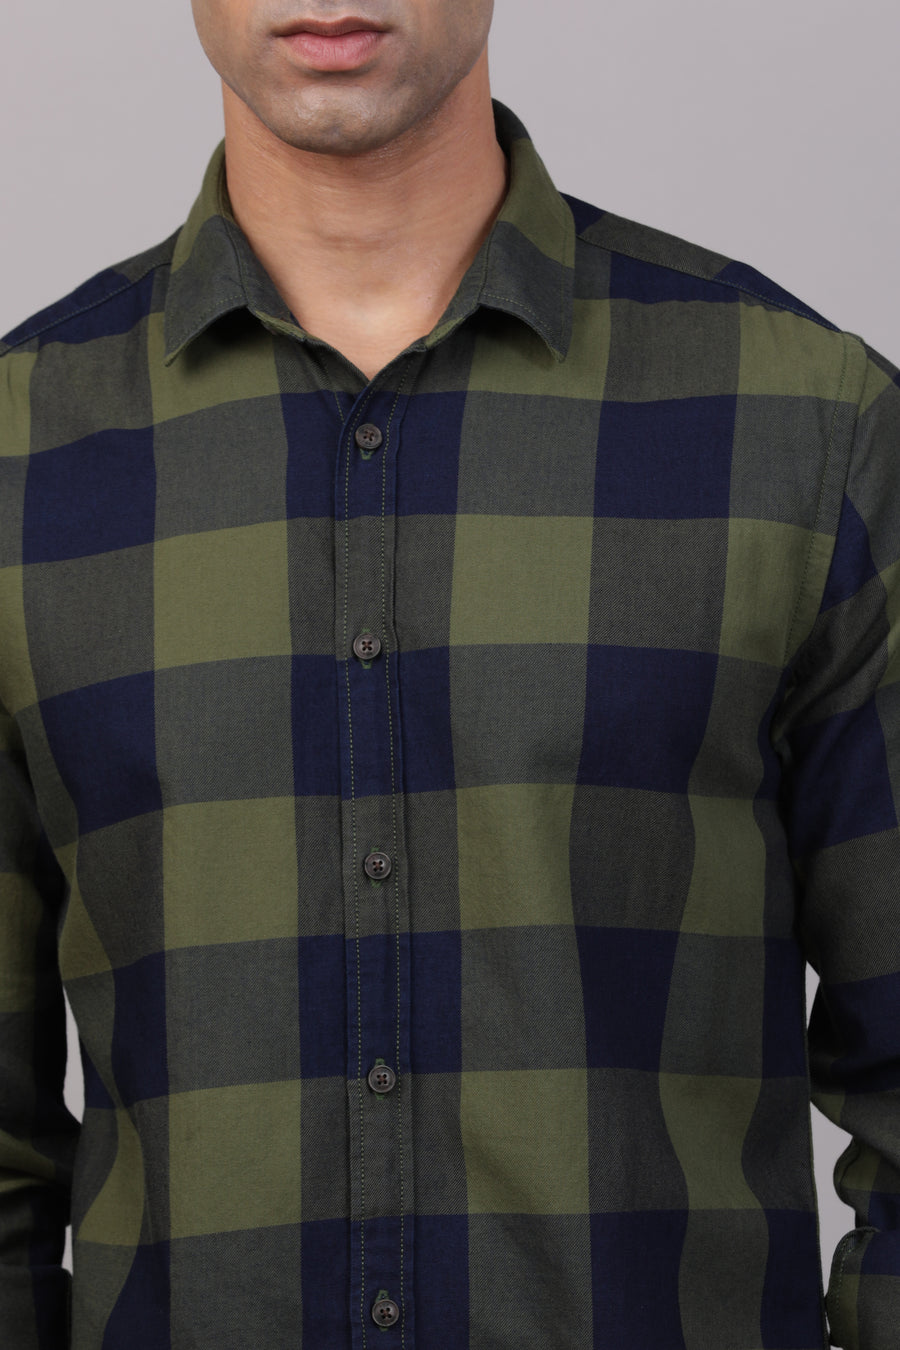 Blog - Printed Check Shirt - Green